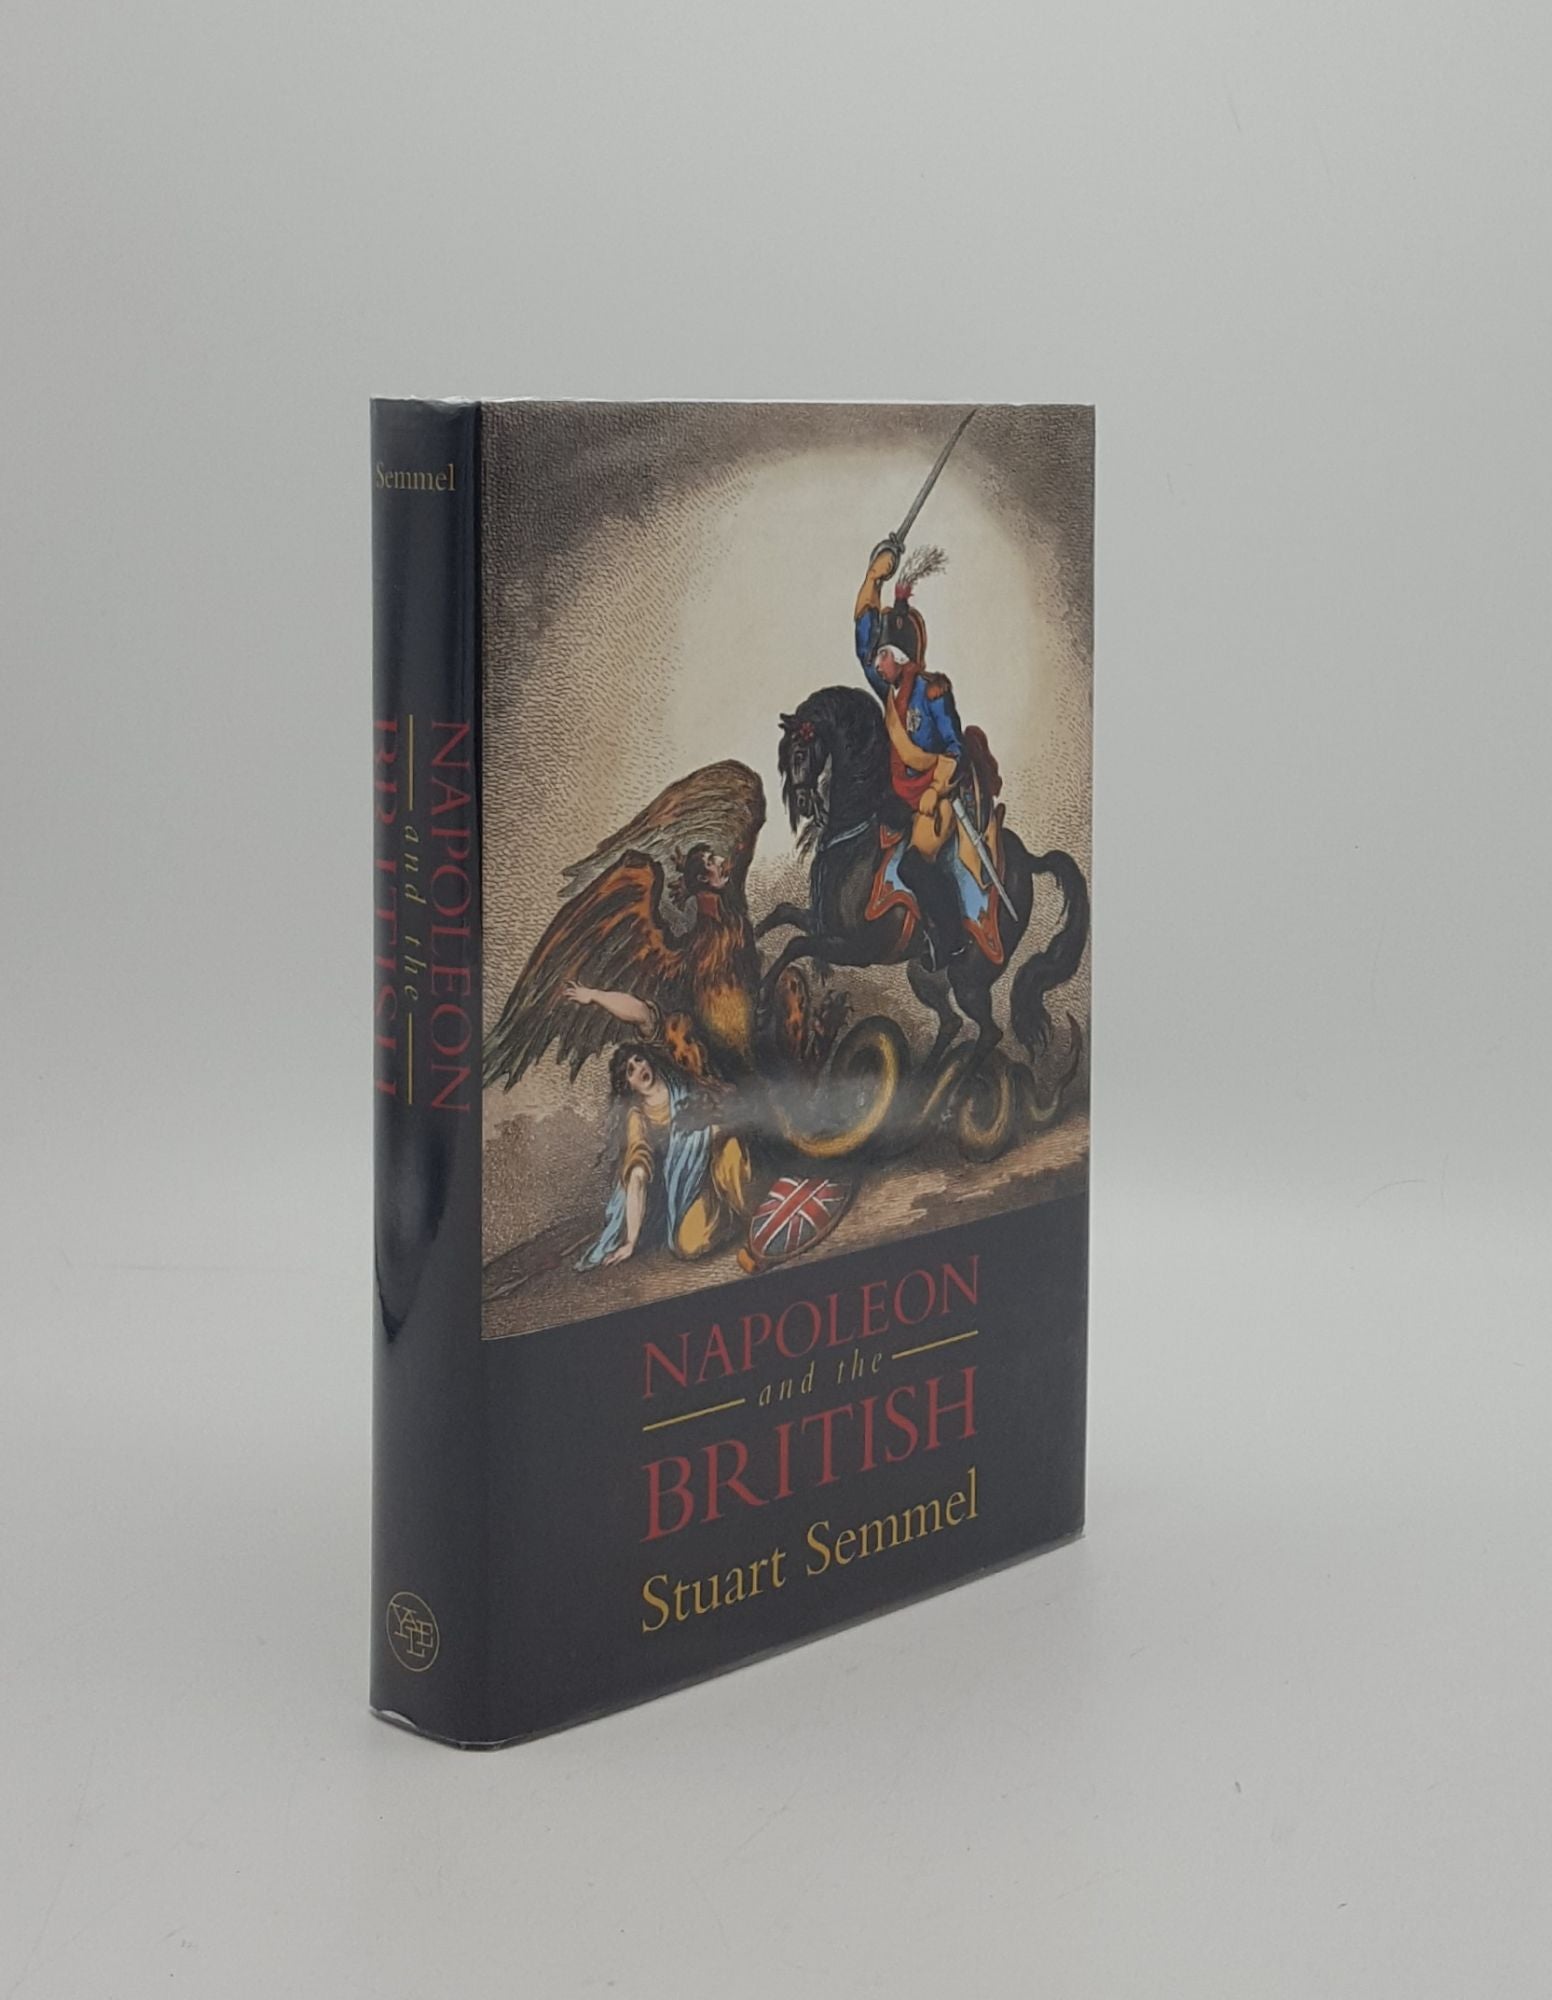 SEMMEL Stuart - Napoleon and the British